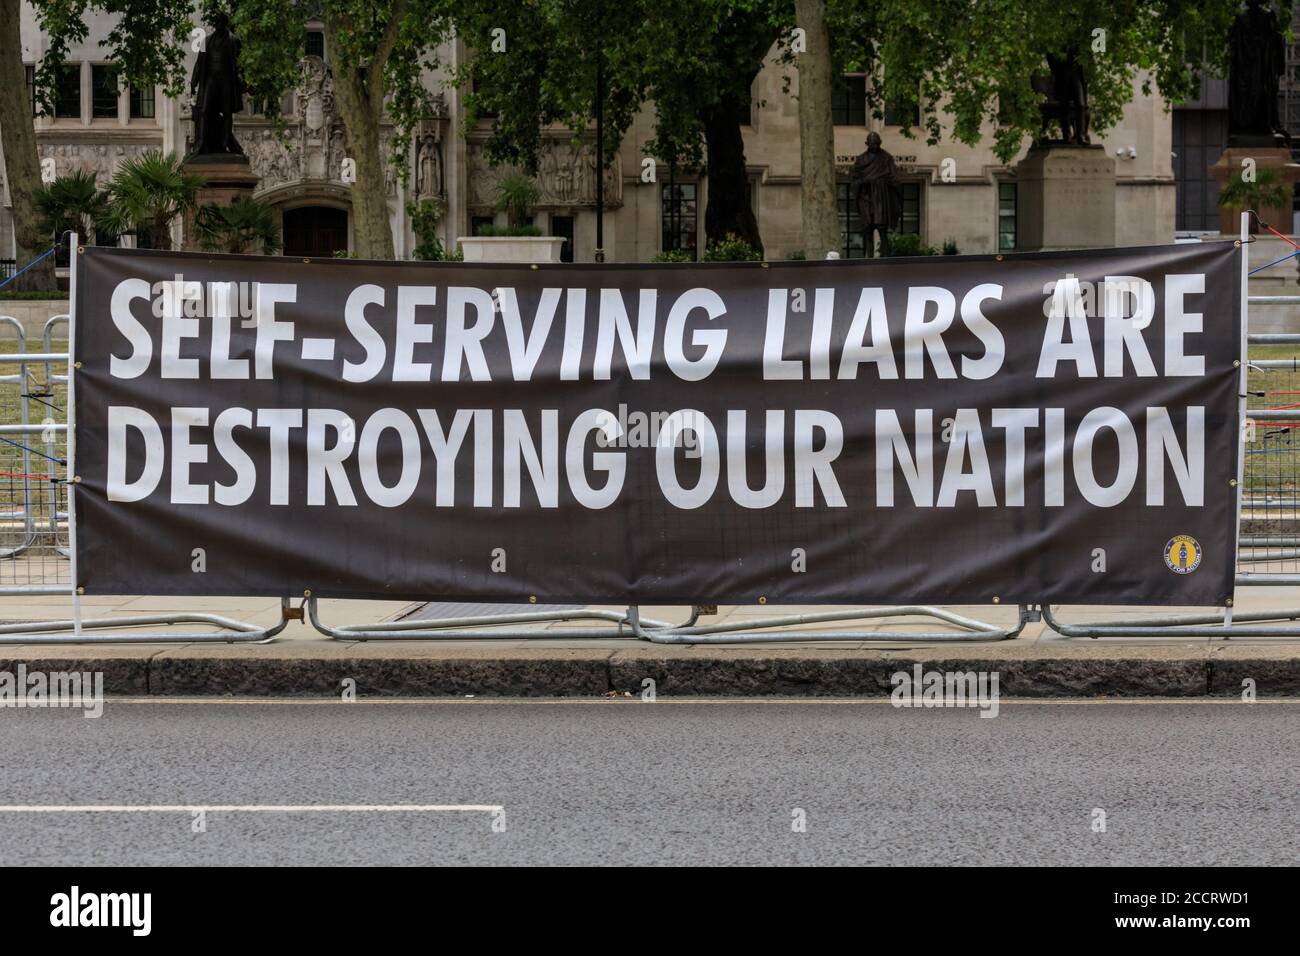 Banner anti-governo al di fuori delle Camere del Parlamento 'i Liars self-serving stanno distruggendo la nostra nazione', Parliament Square, Westminster, Londra Foto Stock